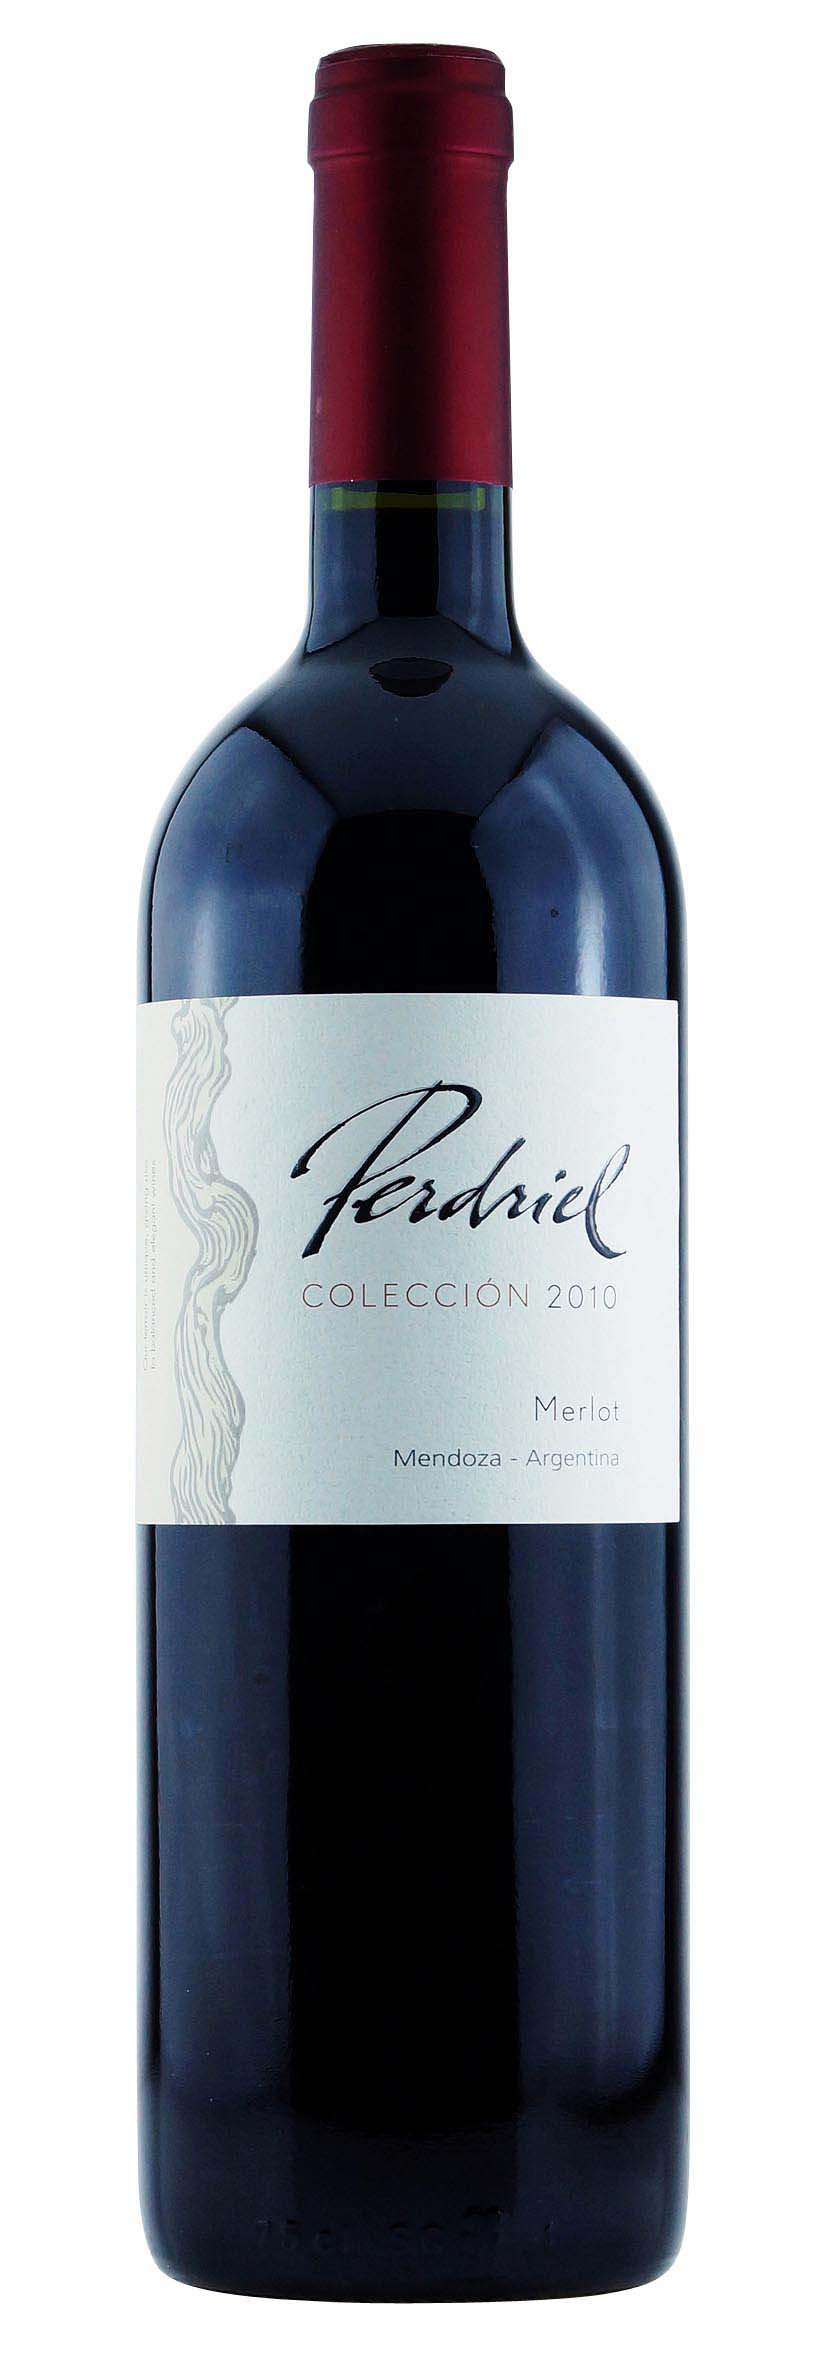 Perdriel Merlot Colección 2010